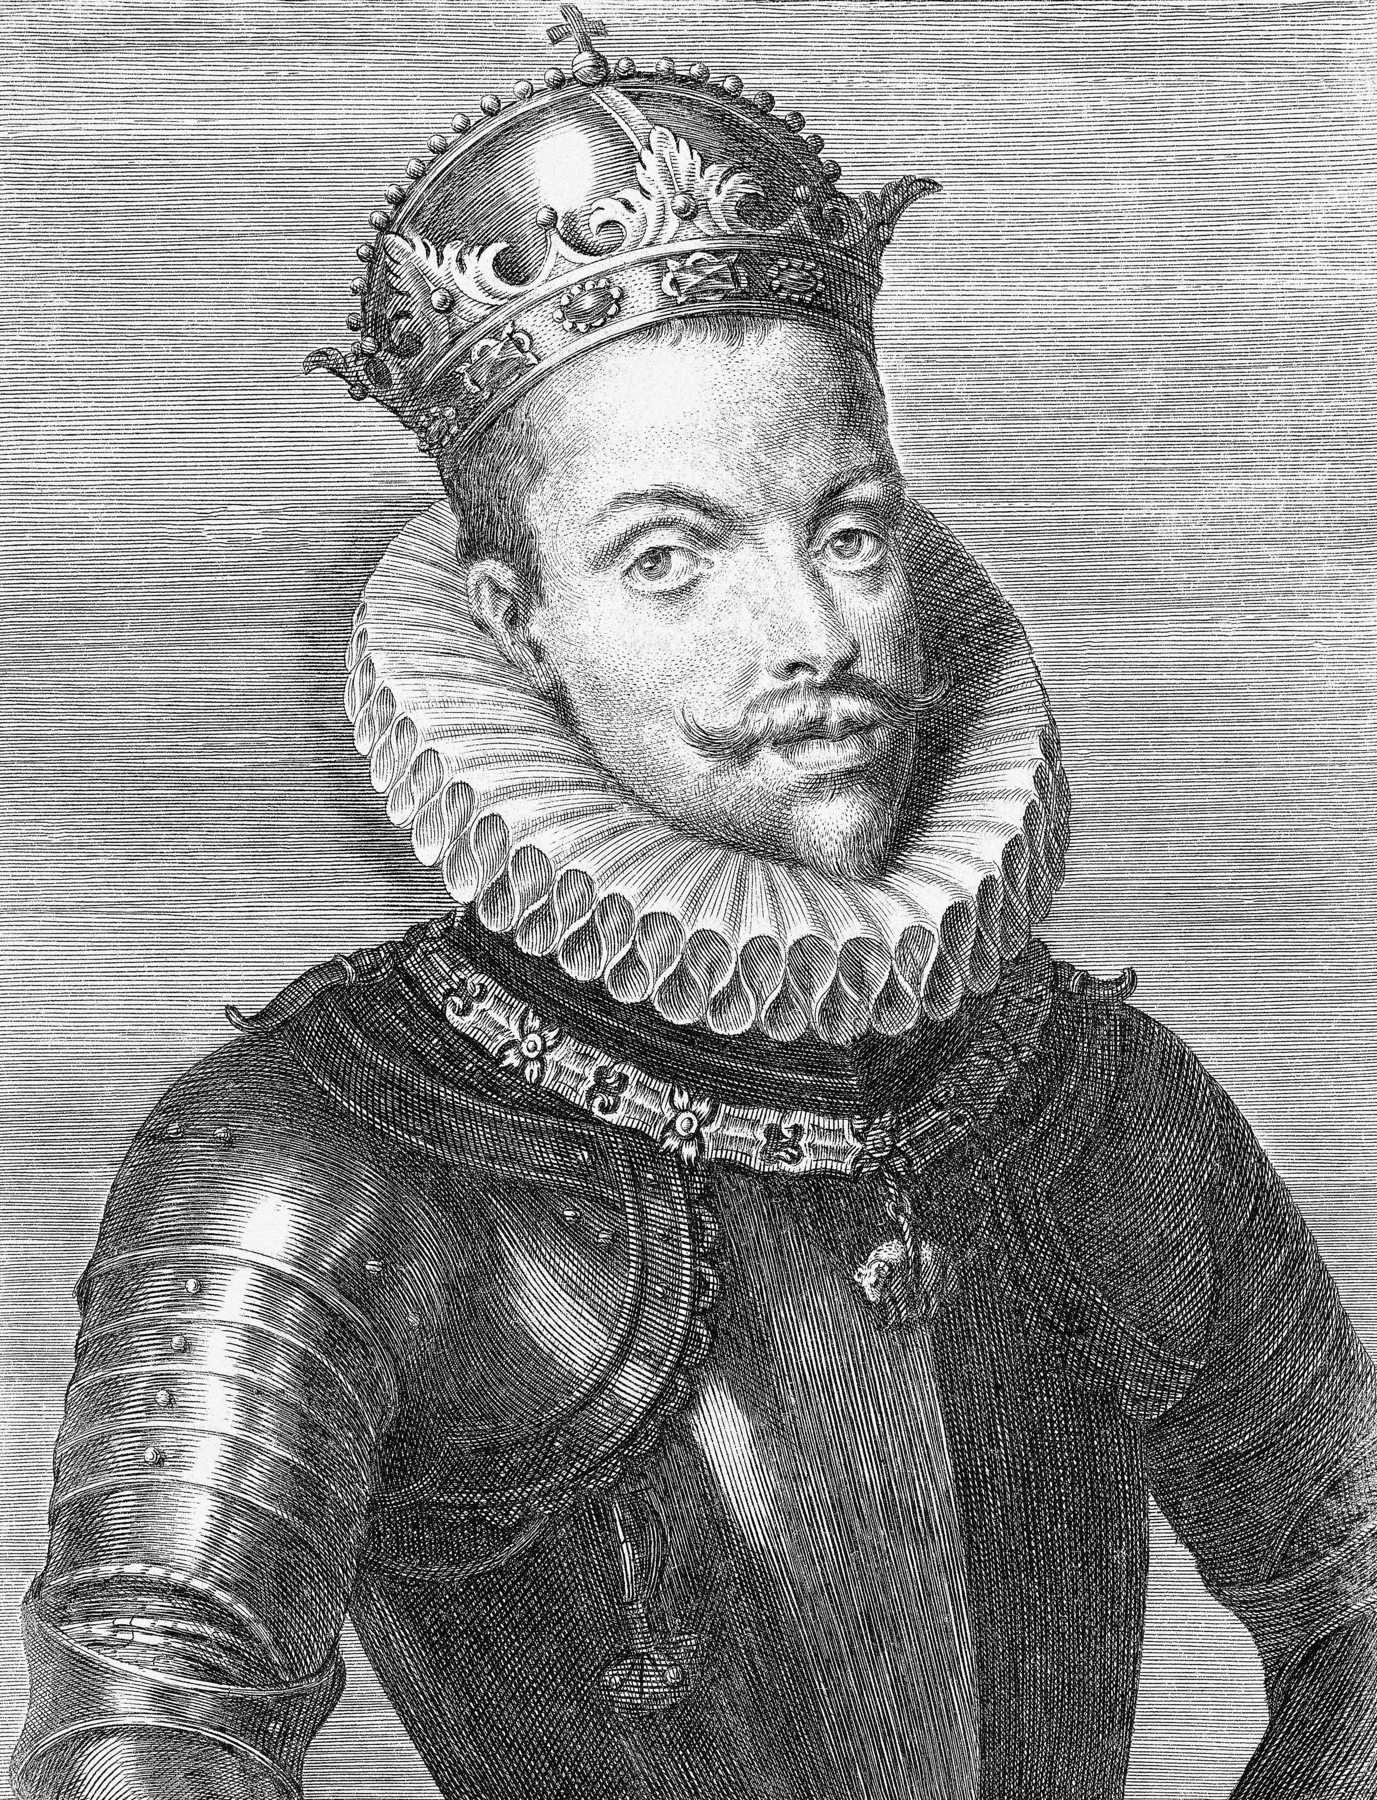 Gravura em preto e branco. Um homem visto de frente, vestindo uma armadura e uma coroa ornamentada sobre a sua cabeça.